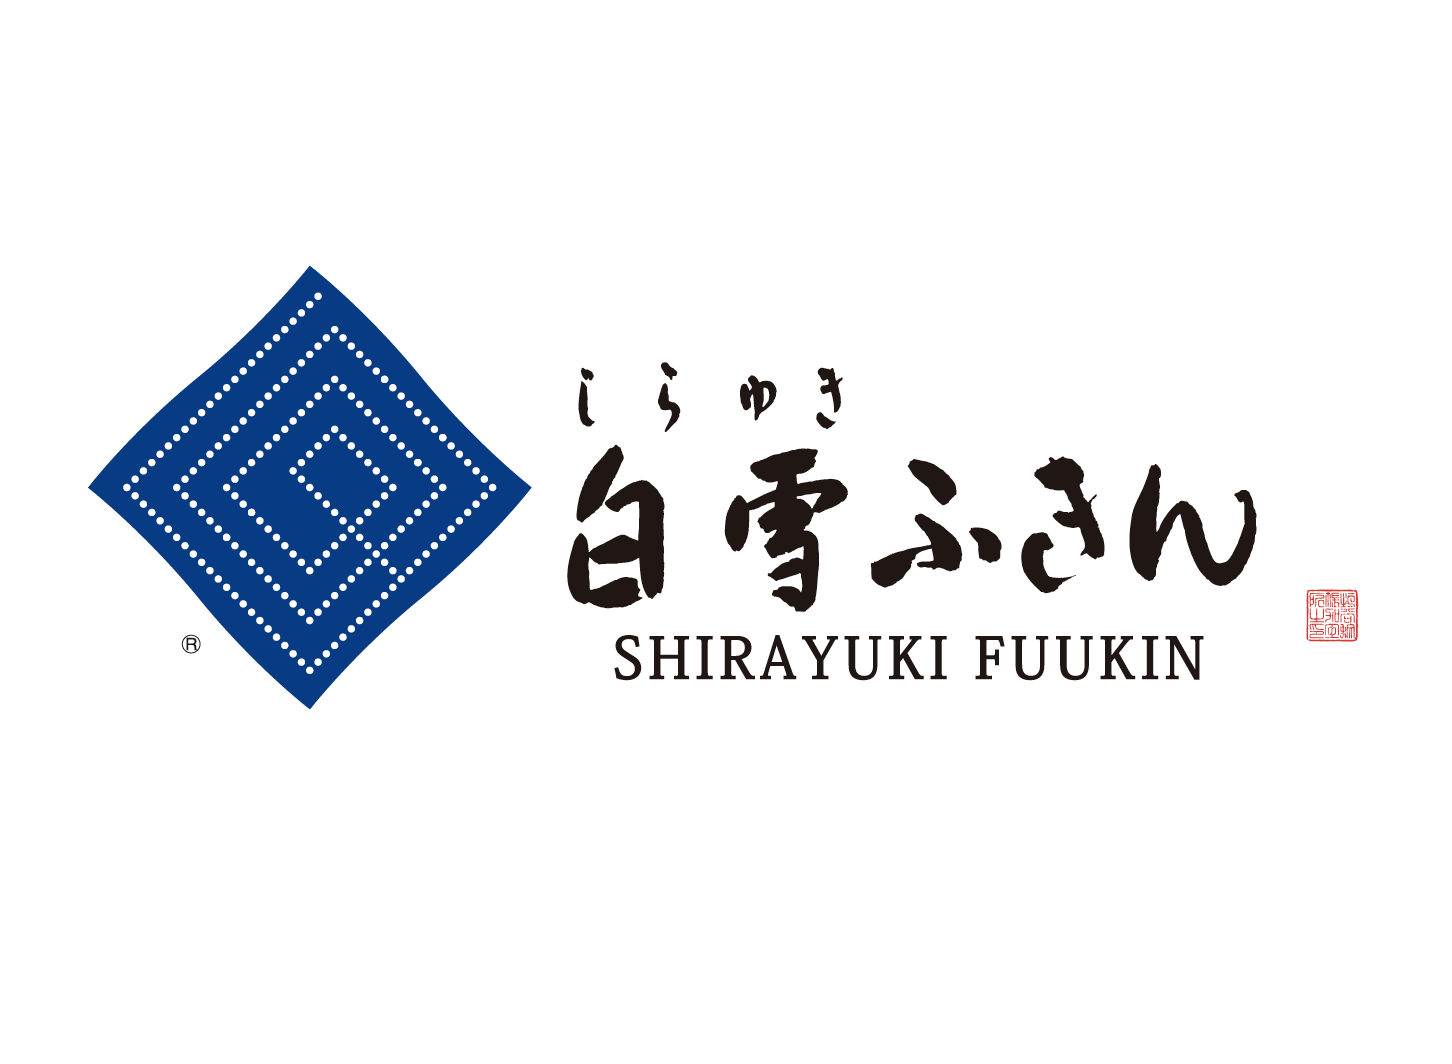 SHIRAYUKI FUKIN